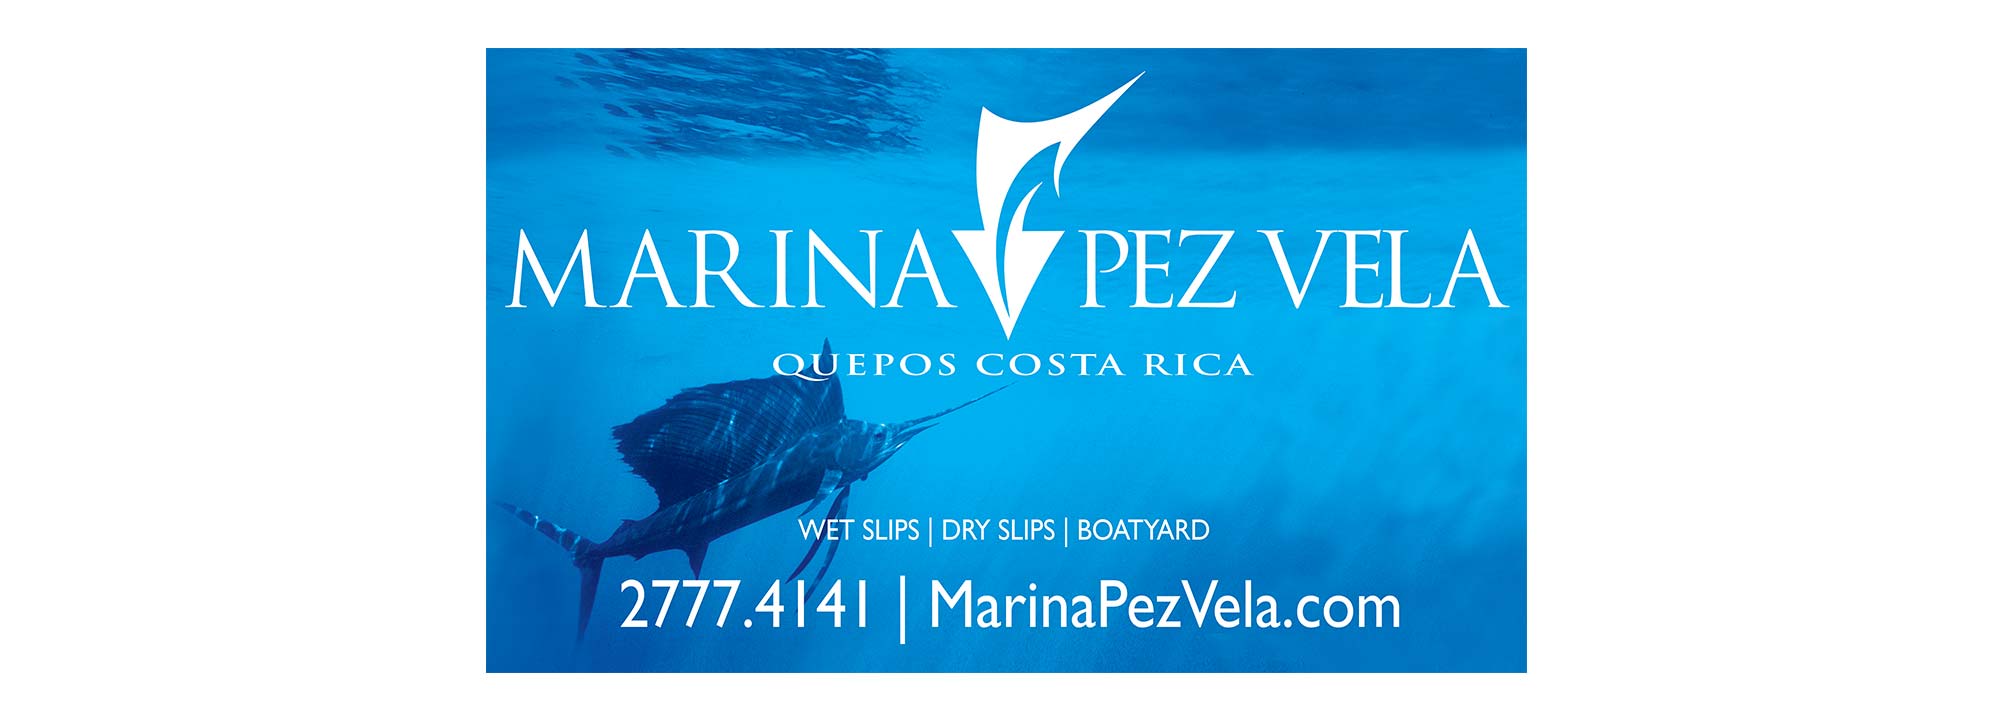 Marina Pez Vela Billboard